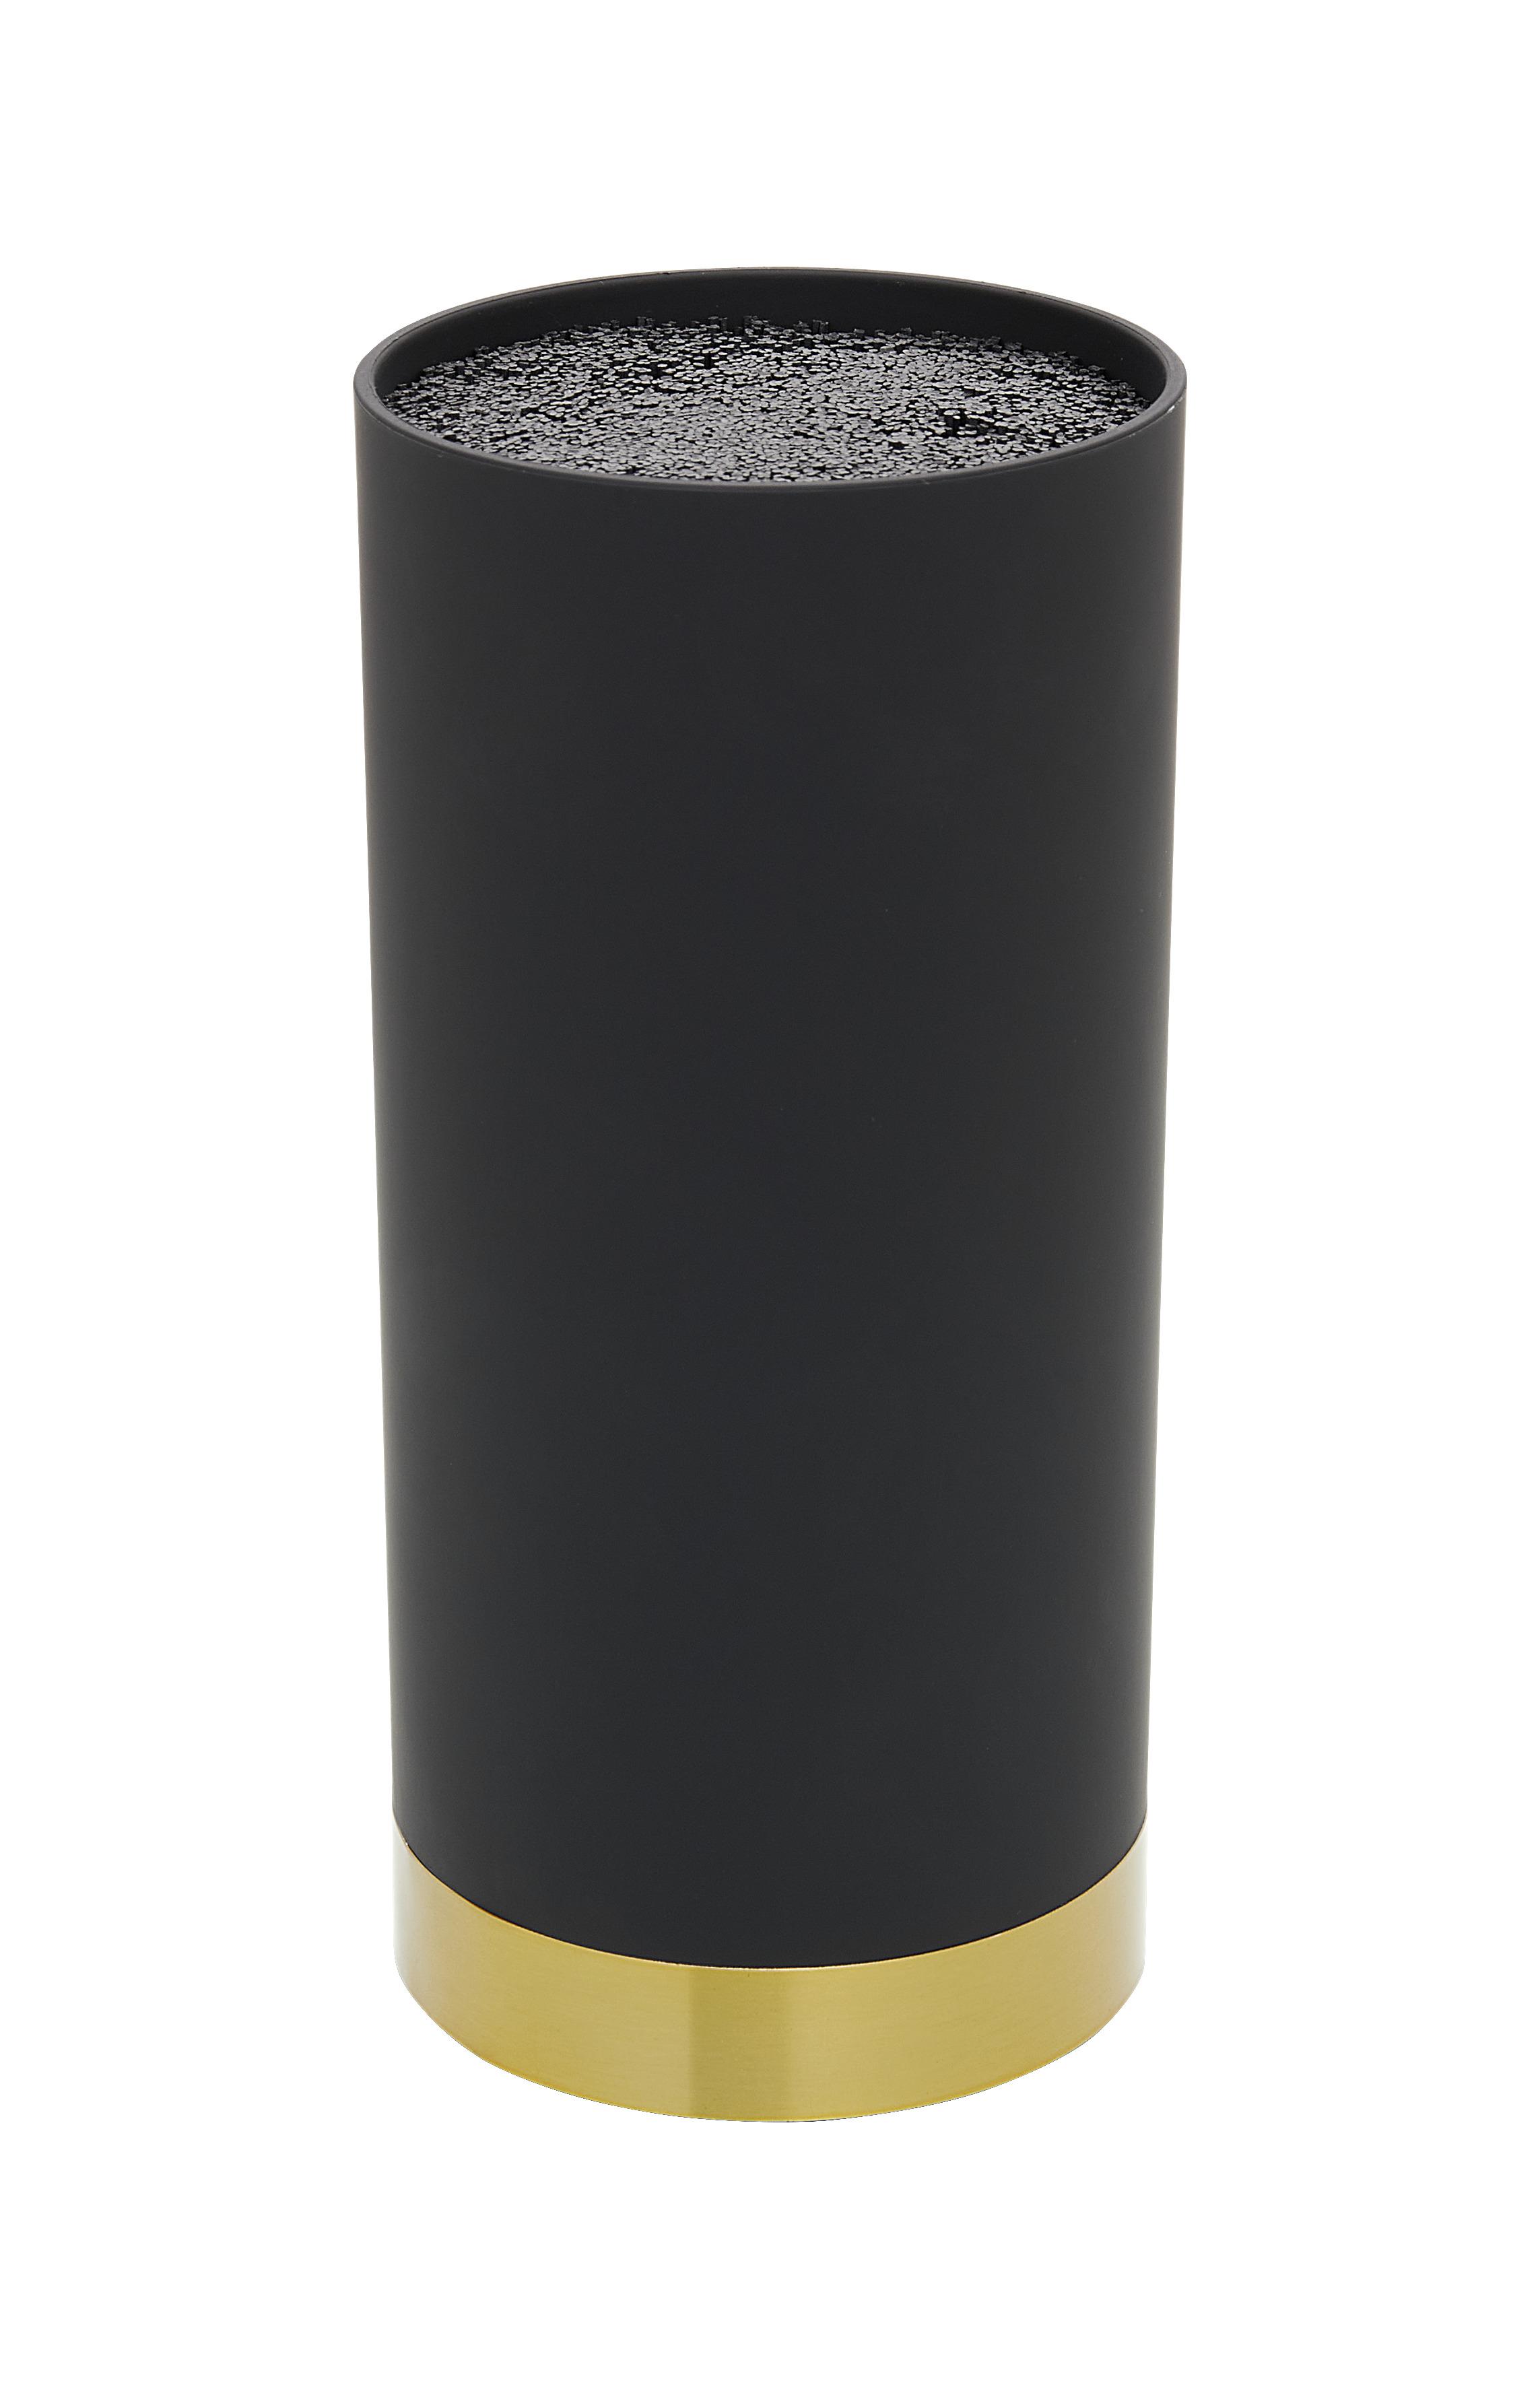 Blok Za Nože Finn - zlate barve/črna, Moderno, kovina/umetna masa (11/22,5cm) - Premium Living